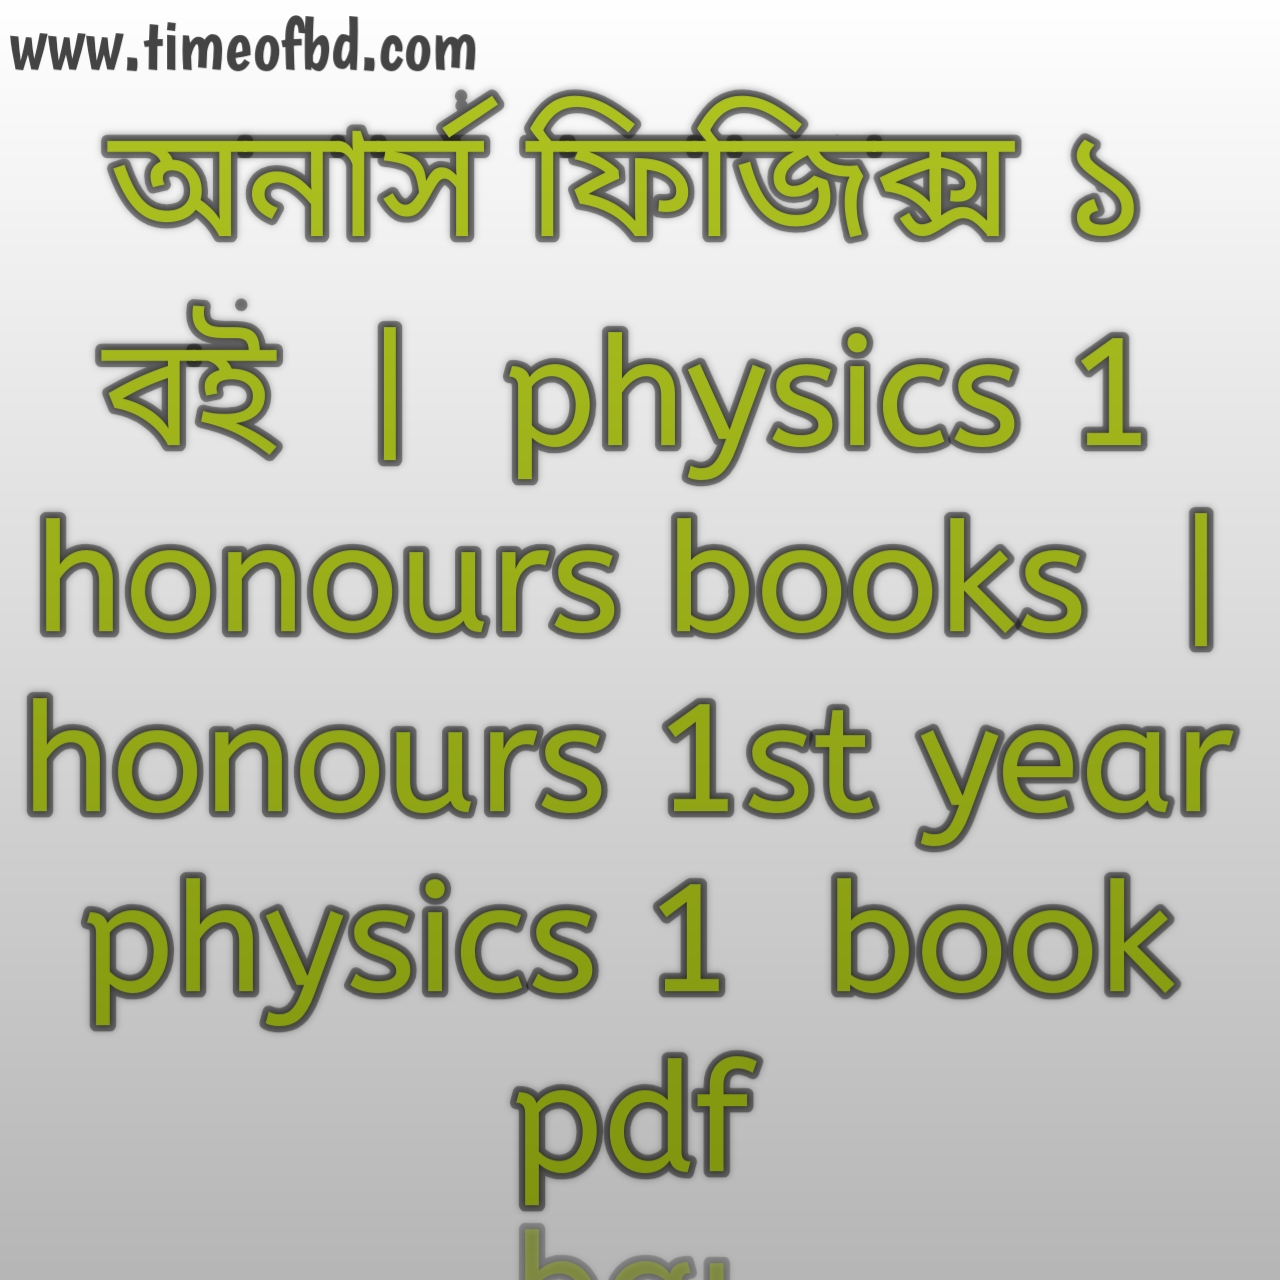 অনার্স ফিজিক্স ১   বই, physics 1  honours books, অনার্স ফিজিক্স ১   বই pdf, physics 1  honours books pdf, অনার্স ফিজিক্স ১   বিভাগ , honours 1st year physics 1  book pdf, অনার্স দ্বিতীয় বর্ষের ফিজিক্স ১   বই pdf, honours 2nd year physics 1  book list, অনার্স দ্বিতীয় বর্ষের ফিজিক্স ১   বই, physics 1  honours practical book, অনার্স প্রথম বর্ষ ফিজিক্স ১   বই, honours 1st year physics 1  book, ফিজিক্স ১   অনার্স প্রথম বর্ষ, honours 1st year physics 1  book list, ফিজিক্স ১   অনার্স তৃতীয় বর্ষ, best book for physics 1  honours, অনার্স তৃতীয় বর্ষের বই ফিজিক্স ১   pdf, অনার্স তৃতীয় বর্ষের বই ফিজিক্স ১